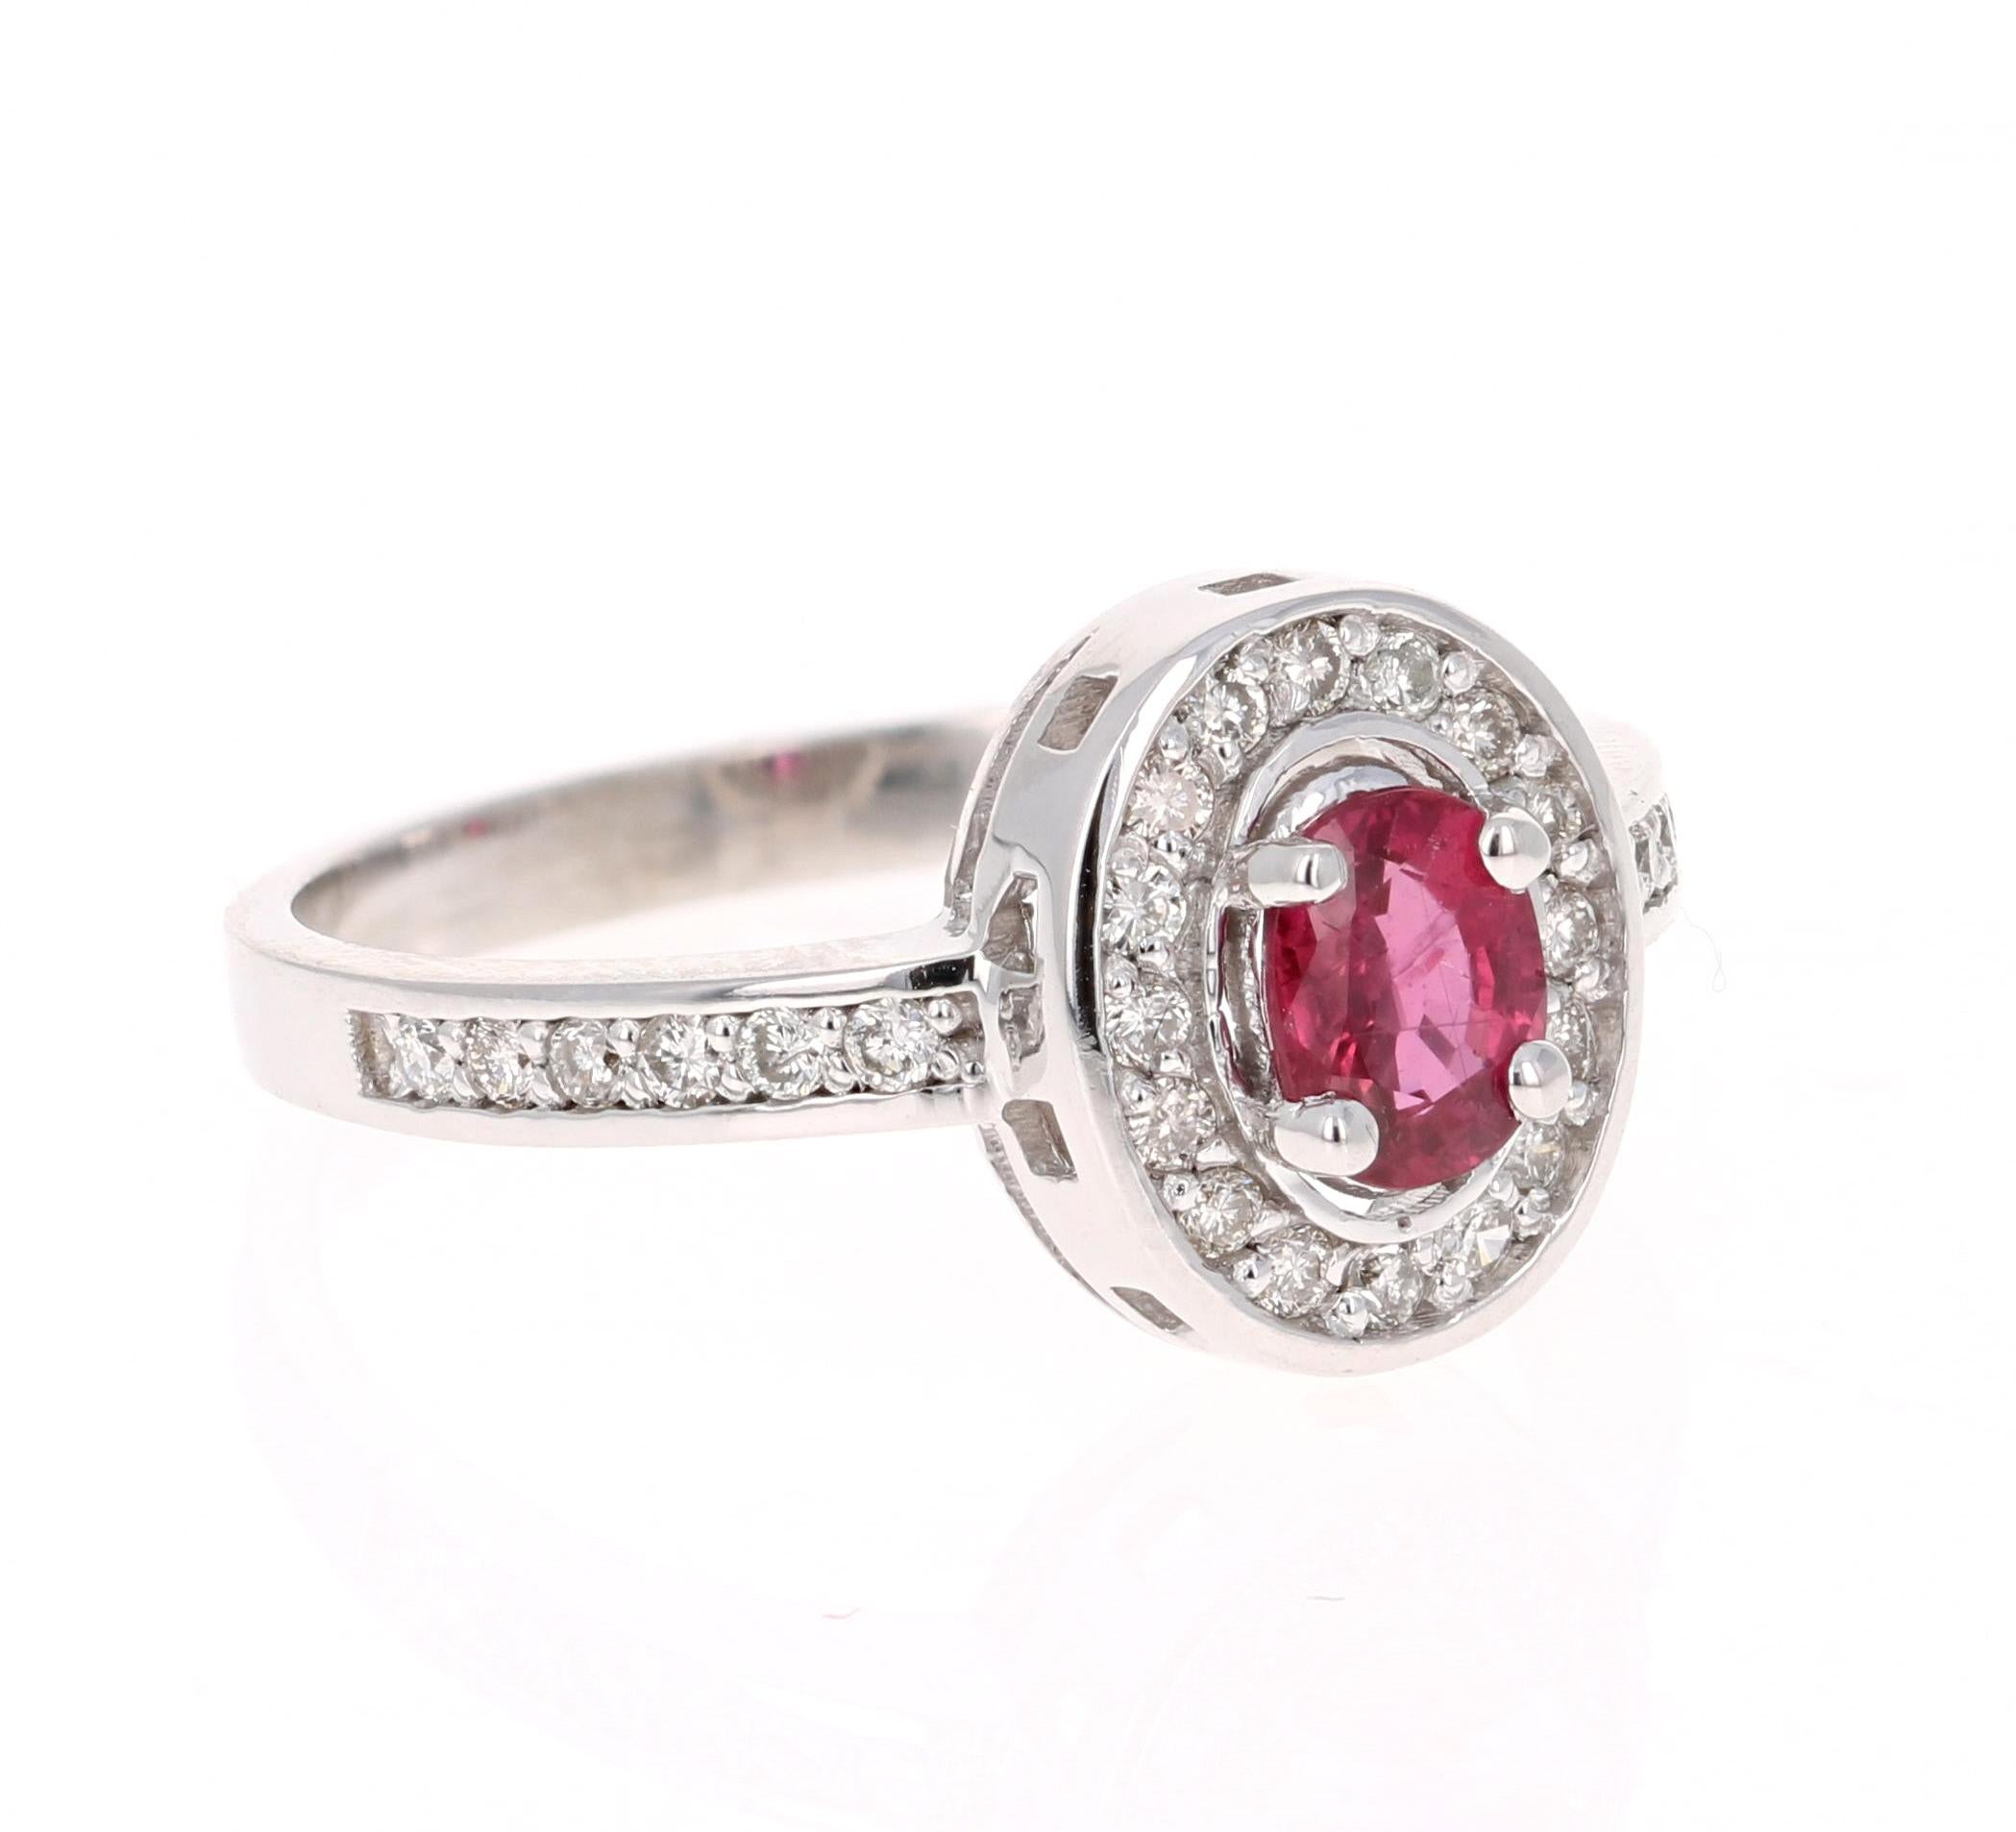 Magnifique bague rubis diamant avec un rubis birman ovale de 0,59 carat entouré de 28 diamants ronds pesant 0,31 carat. Le poids total en carats de la bague est de 1.23 carats. La clarté et la couleur des diamants sont VS/H.

La bague est coulée en